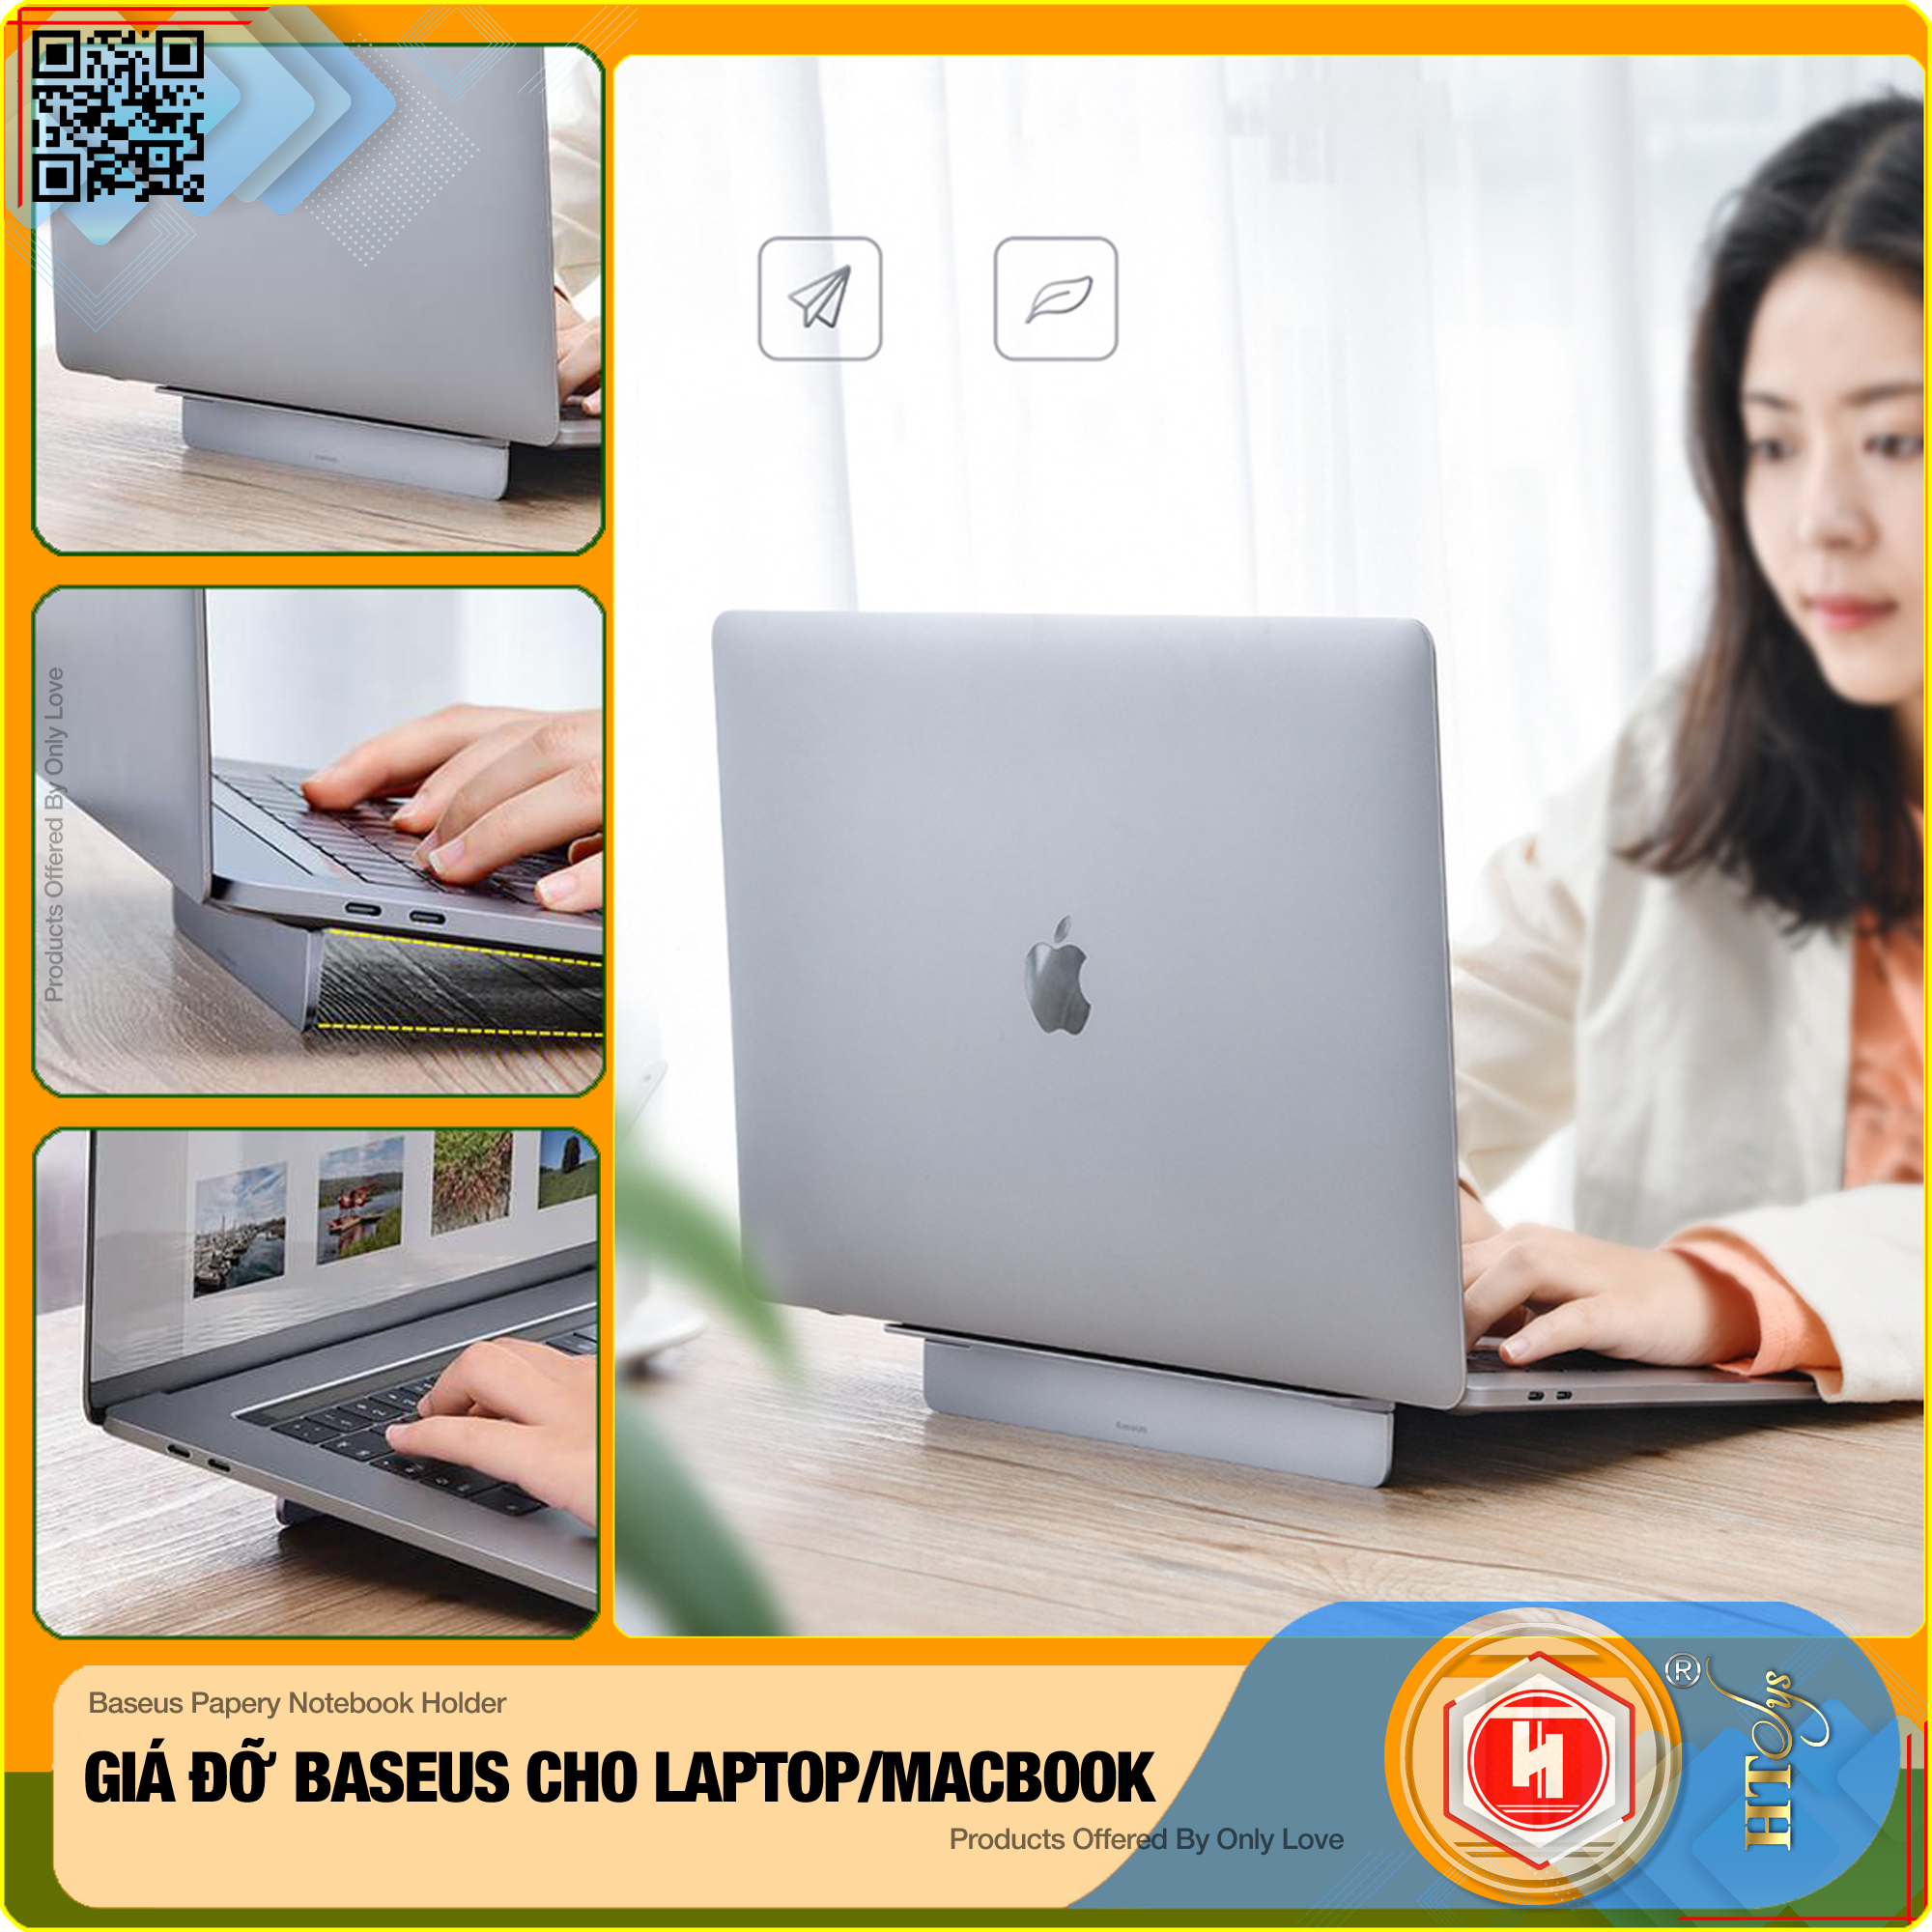 Giá đỡ gấp gọn hợp kim nhôm cho Laptop/Macbook - Đế tản nhiệt dạng xếp, siêu mỏng Baseus Papery Notebook Holder  (0.3cm slim, 8° Angle, Foldable, Portable Alloy Laptop Stand)-Hàng Nhập Khẩu